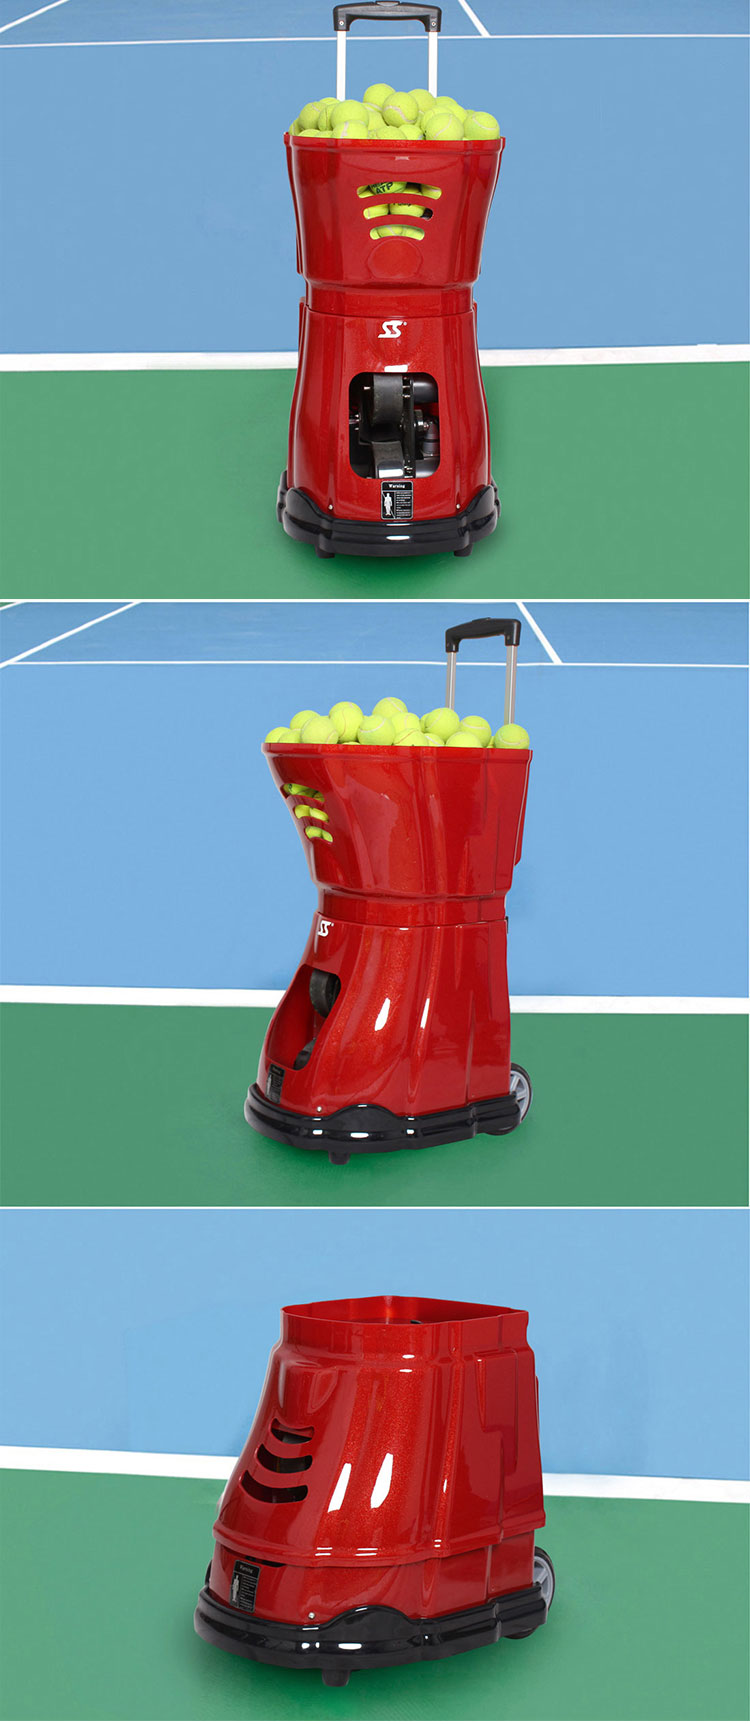 Siboasi Najnowsza konkurencyjna maszyna do tenisa na sprzedaż S2021C